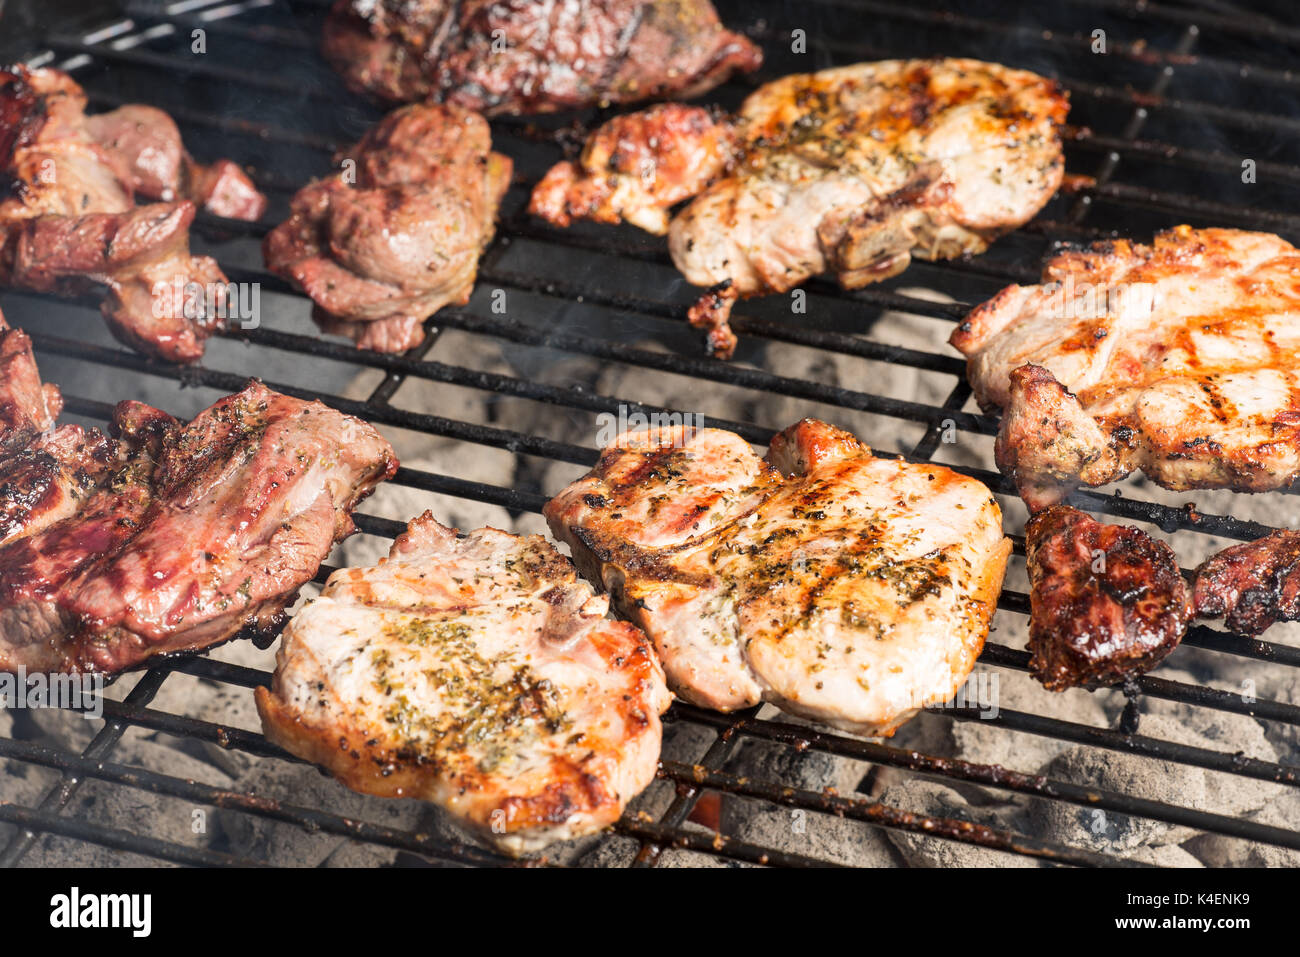 Erfahrene Schweinekoteletts und Lamm Steak kochen auf dem Holzkohle Grill  Stockfotografie - Alamy